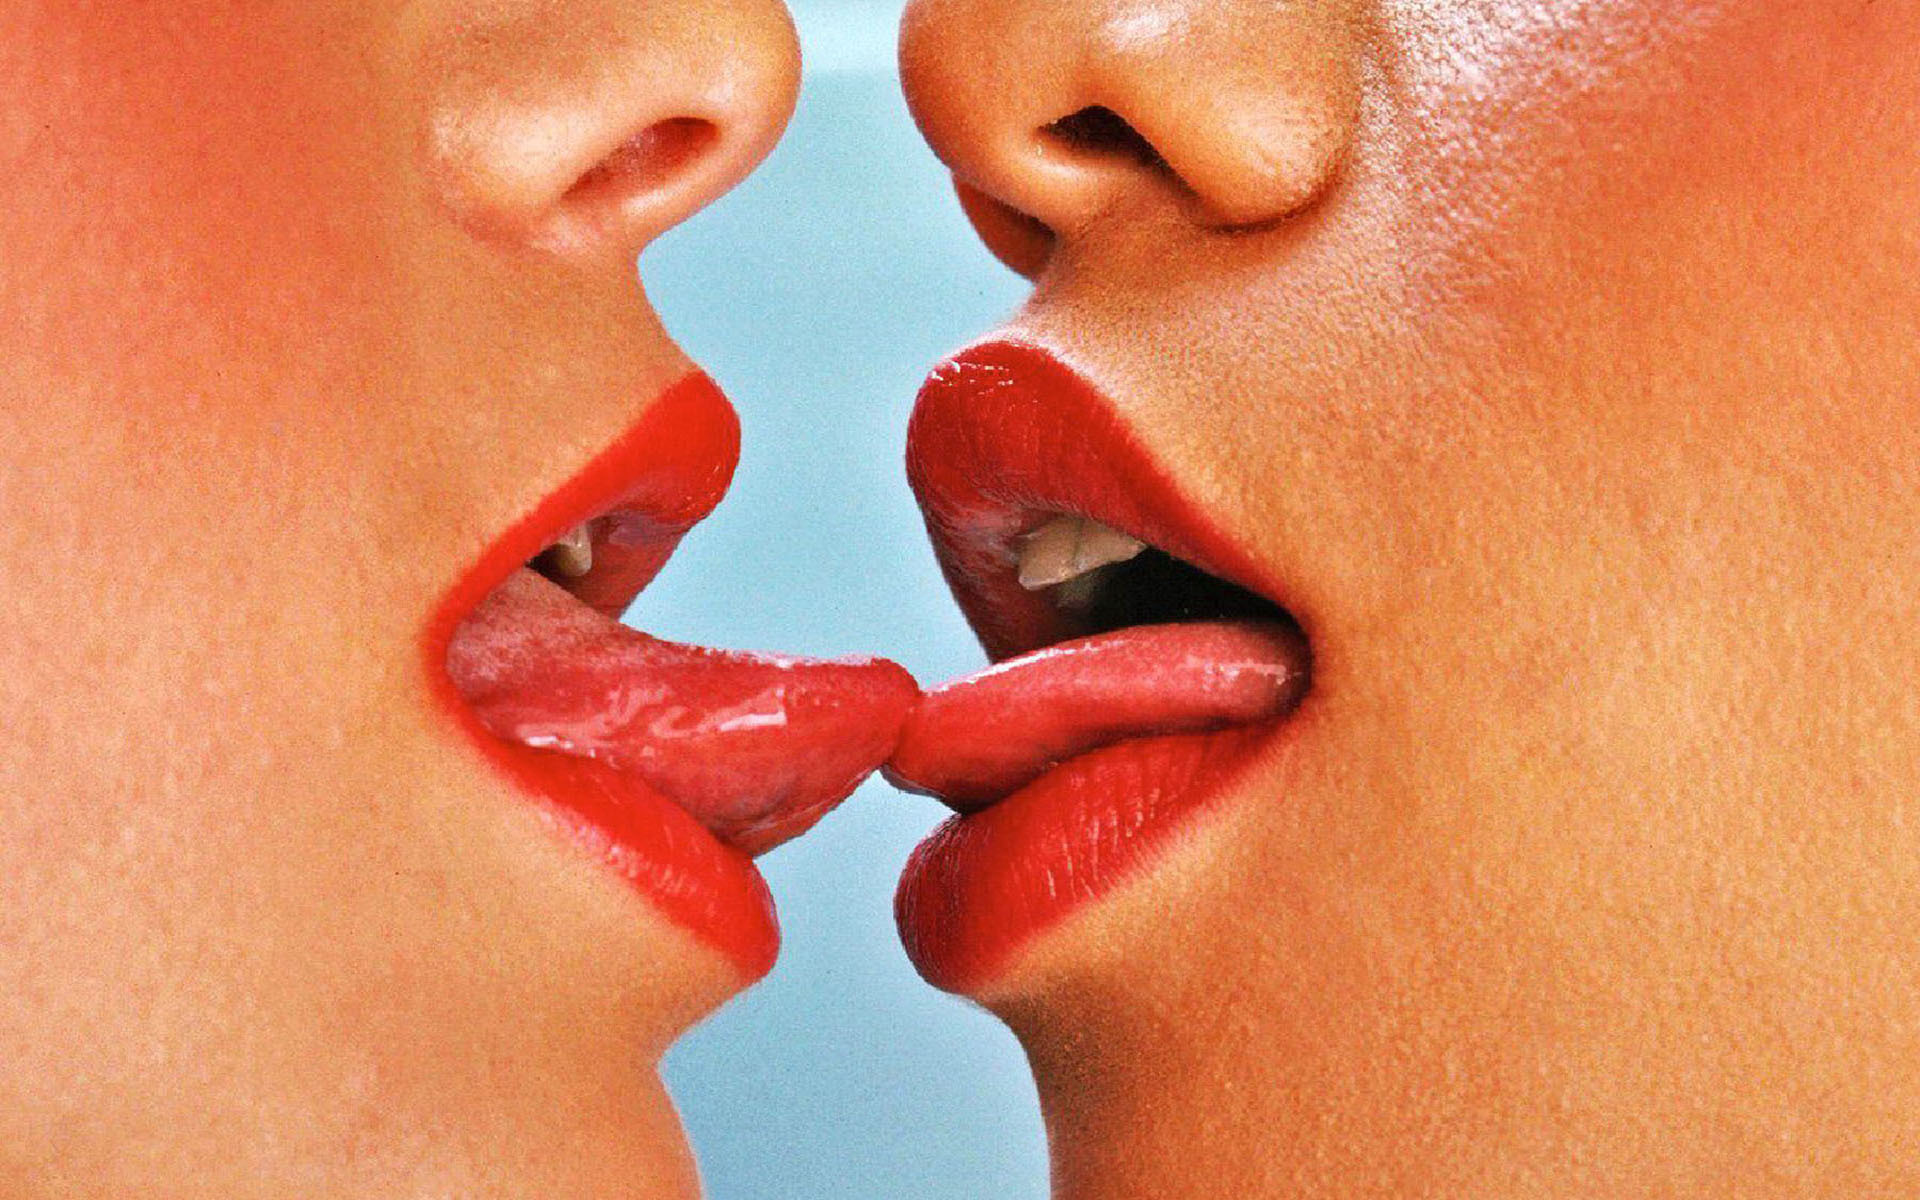 Girls kissing clit